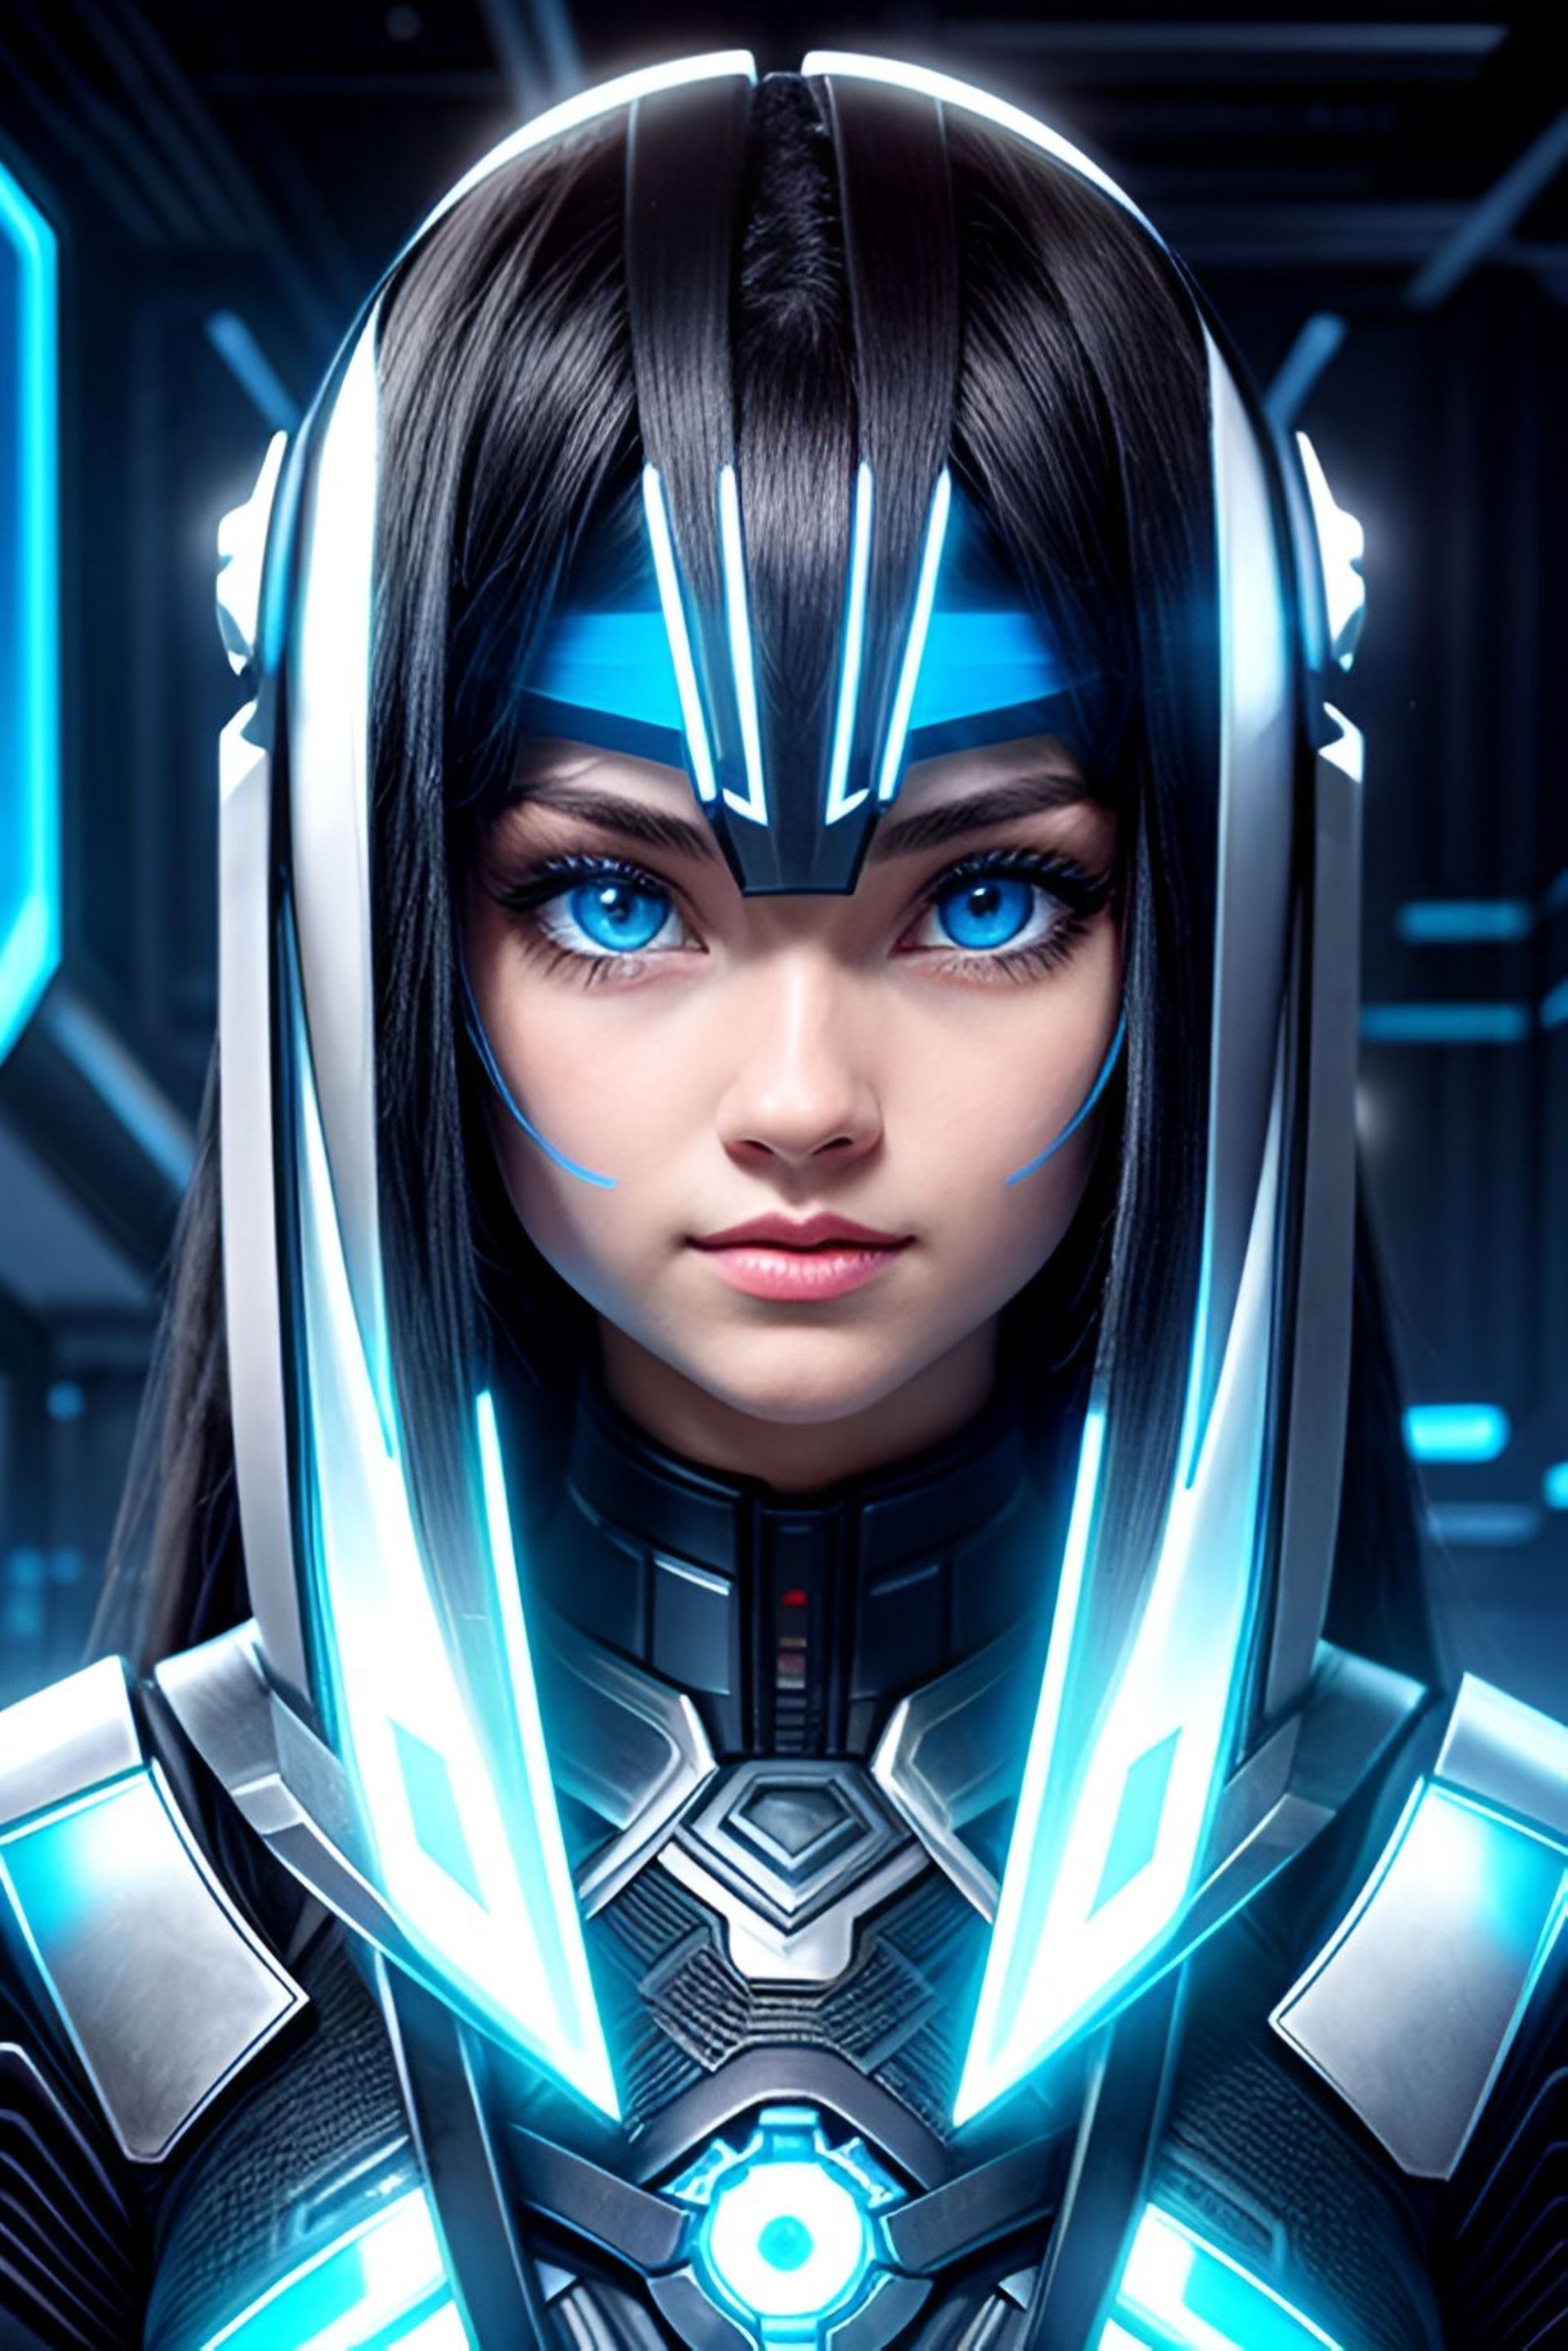 一个身穿动力装甲、蓝眼睛的女孩。